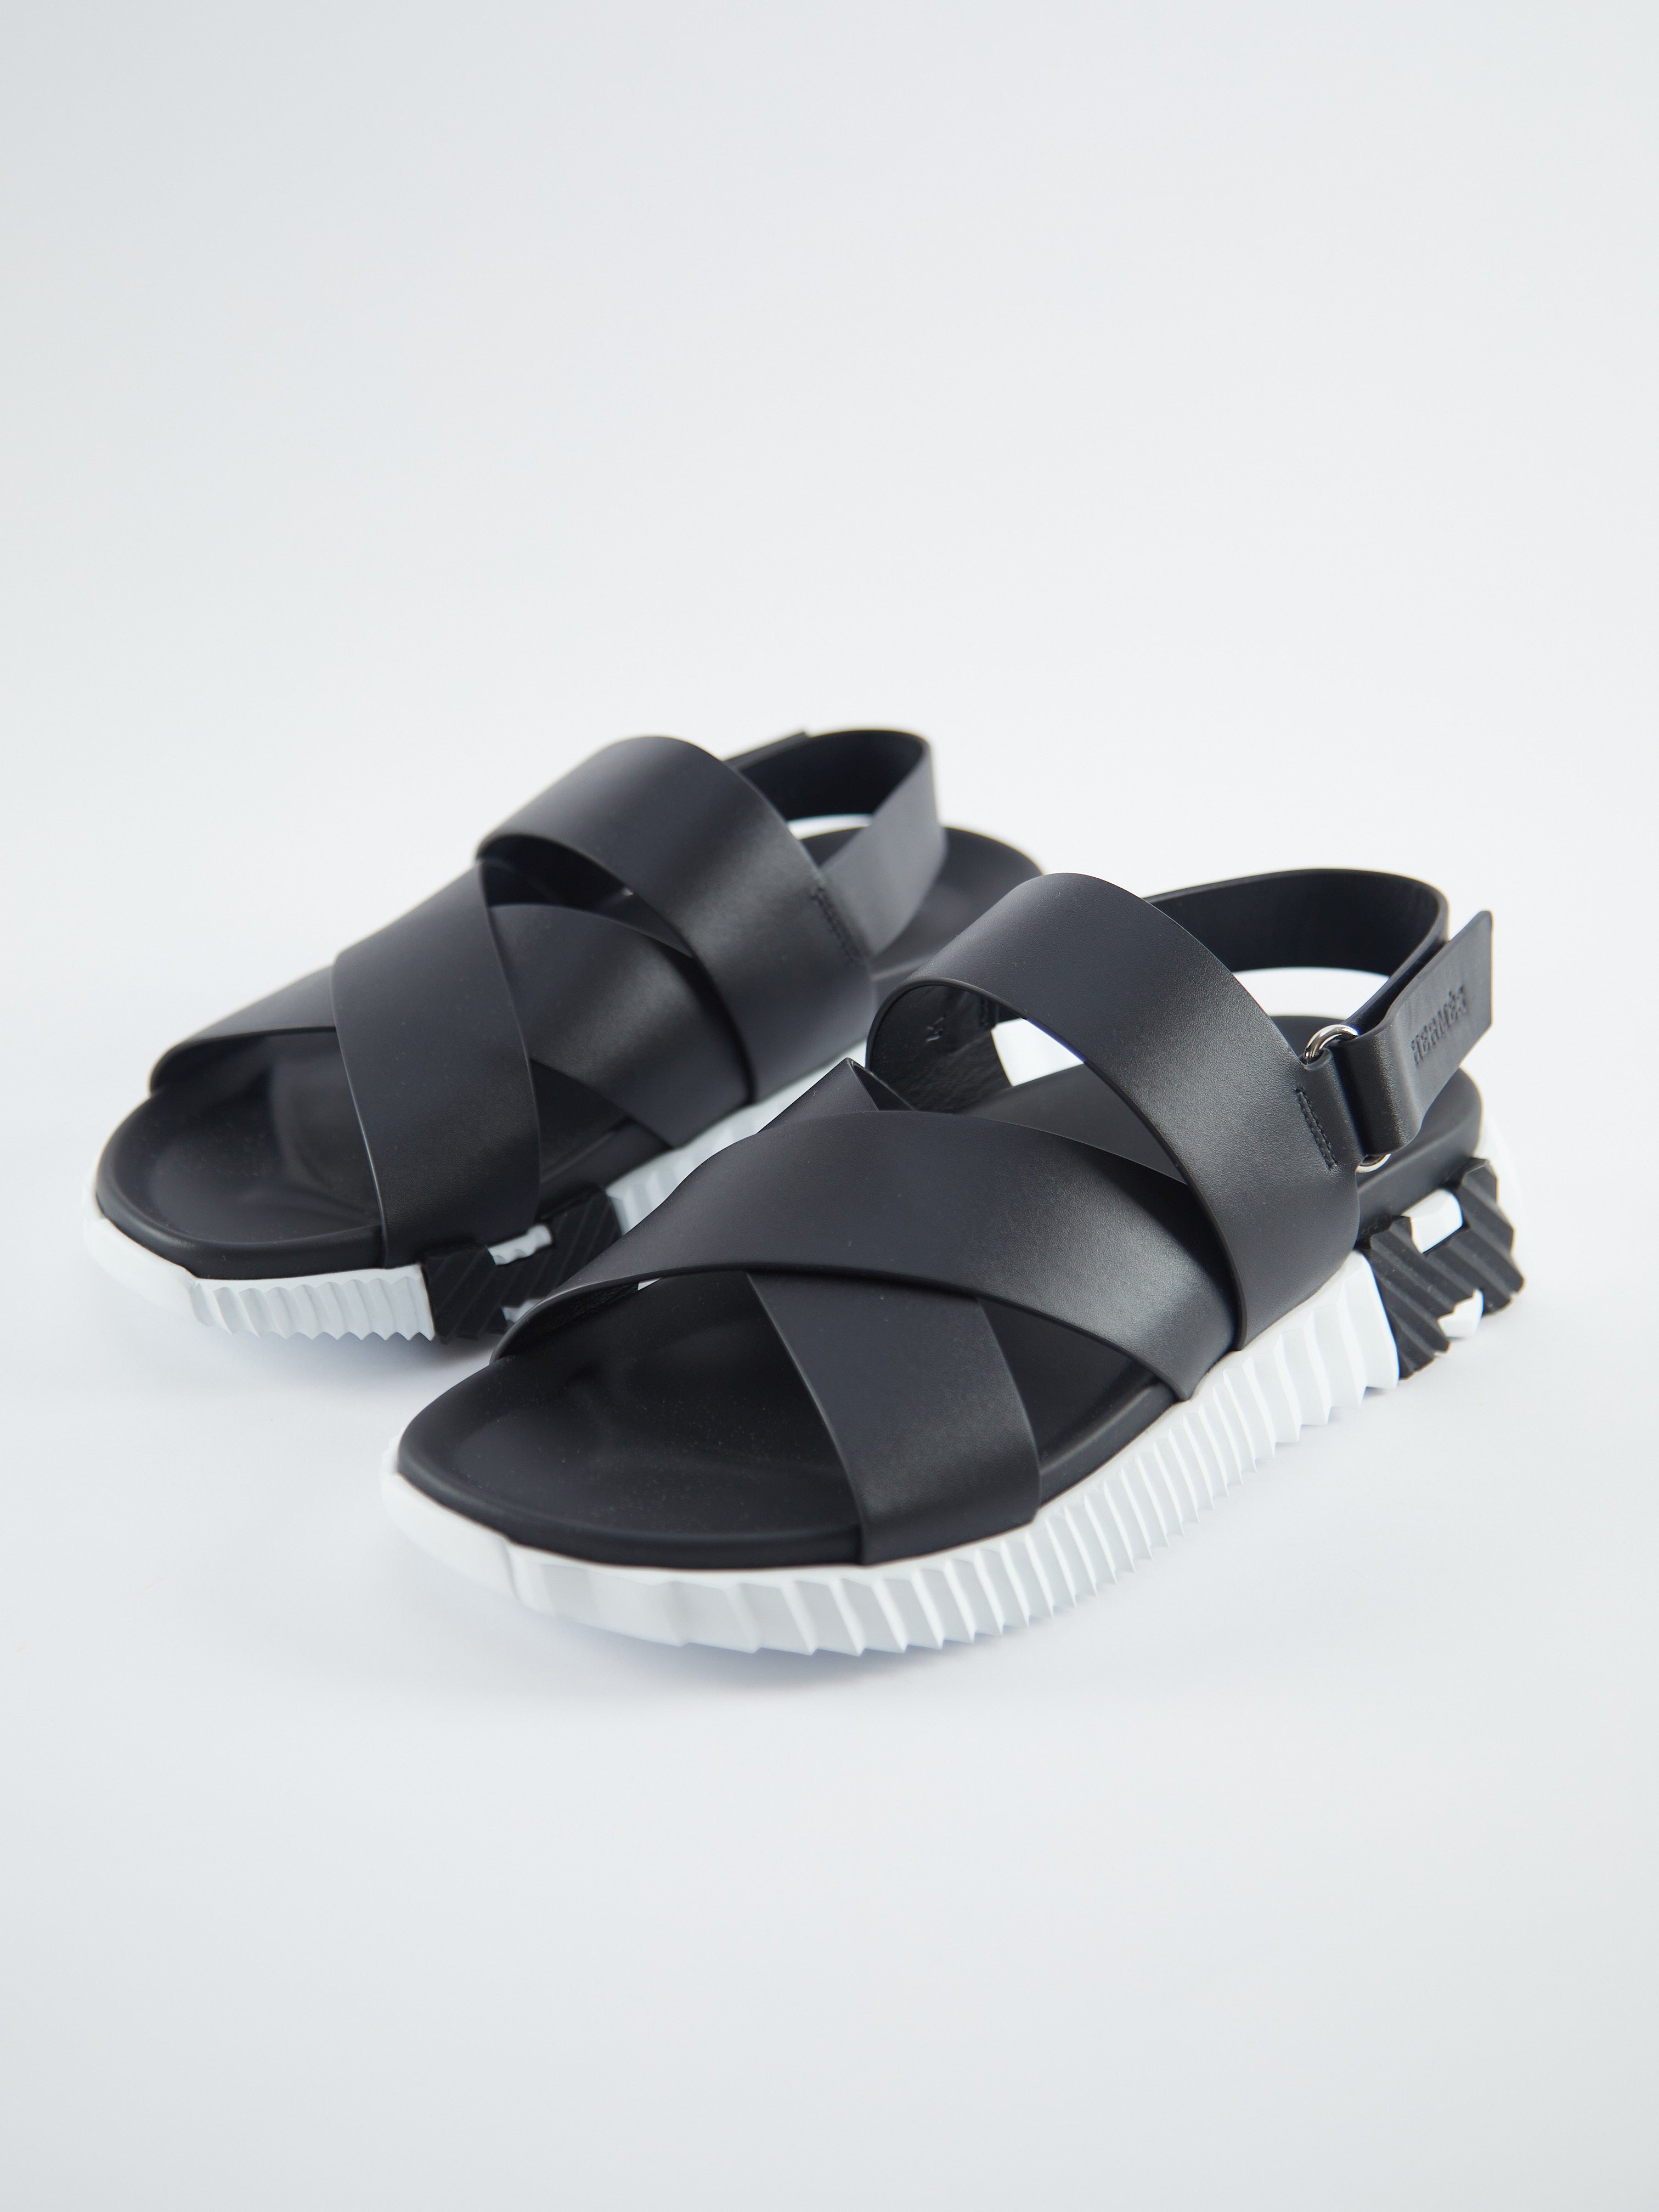 Hermès Electric Sandals (Noir)